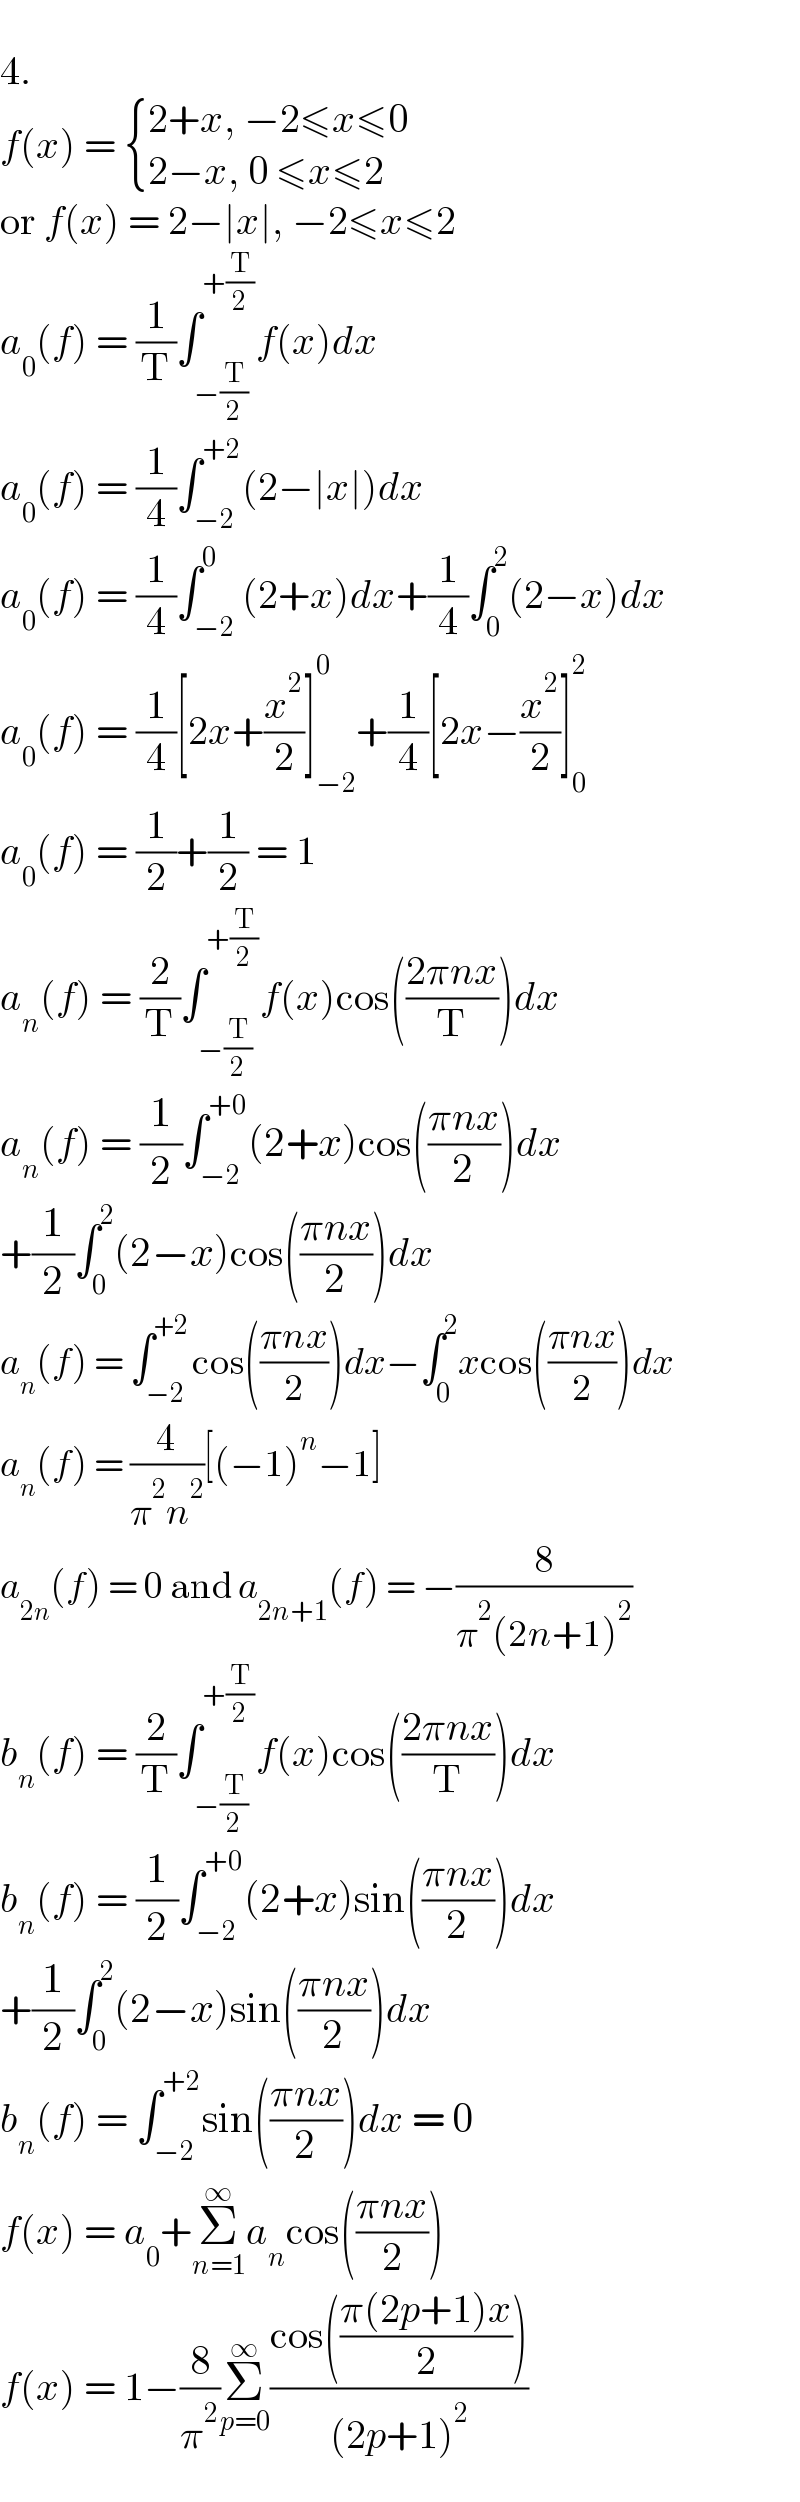   4.  f(x) =  { ((2+x, −2≤x≤0)),((2−x, 0 ≤x≤2)) :}  or f(x) = 2−∣x∣, −2≤x≤2  a_0 (f) = (1/T)∫_(−(T/2)) ^(+(T/2)) f(x)dx  a_0 (f) = (1/4)∫_(−2) ^(+2) (2−∣x∣)dx  a_0 (f) = (1/4)∫_(−2) ^0 (2+x)dx+(1/4)∫_0 ^2 (2−x)dx  a_0 (f) = (1/4)[2x+(x^2 /2)]_(−2) ^0 +(1/4)[2x−(x^2 /2)]_0 ^2   a_0 (f) = (1/2)+(1/2) = 1  a_n (f) = (2/T)∫_(−(T/2)) ^(+(T/2)) f(x)cos(((2πnx)/T))dx  a_n (f) = (1/2)∫_(−2) ^(+0) (2+x)cos(((πnx)/2))dx  +(1/2)∫_0 ^2 (2−x)cos(((πnx)/2))dx  a_n (f) = ∫_(−2) ^(+2) cos(((πnx)/2))dx−∫_0 ^2 xcos(((πnx)/2))dx  a_n (f) = (4/(π^2 n^2 ))[(−1)^n −1]  a_(2n) (f) = 0 and a_(2n+1) (f) = −(8/(π^2 (2n+1)^2 ))  b_n (f) = (2/T)∫_(−(T/2)) ^(+(T/2)) f(x)cos(((2πnx)/T))dx  b_n (f) = (1/2)∫_(−2) ^(+0) (2+x)sin(((πnx)/2))dx  +(1/2)∫_0 ^2 (2−x)sin(((πnx)/2))dx  b_n (f) = ∫_(−2) ^(+2) sin(((πnx)/2))dx = 0  f(x) = a_0 +Σ_(n=1) ^∞ a_n cos(((πnx)/2))  f(x) = 1−(8/π^2 )Σ_(p=0) ^∞ ((cos(((π(2p+1)x)/2)))/((2p+1)^2 ))  